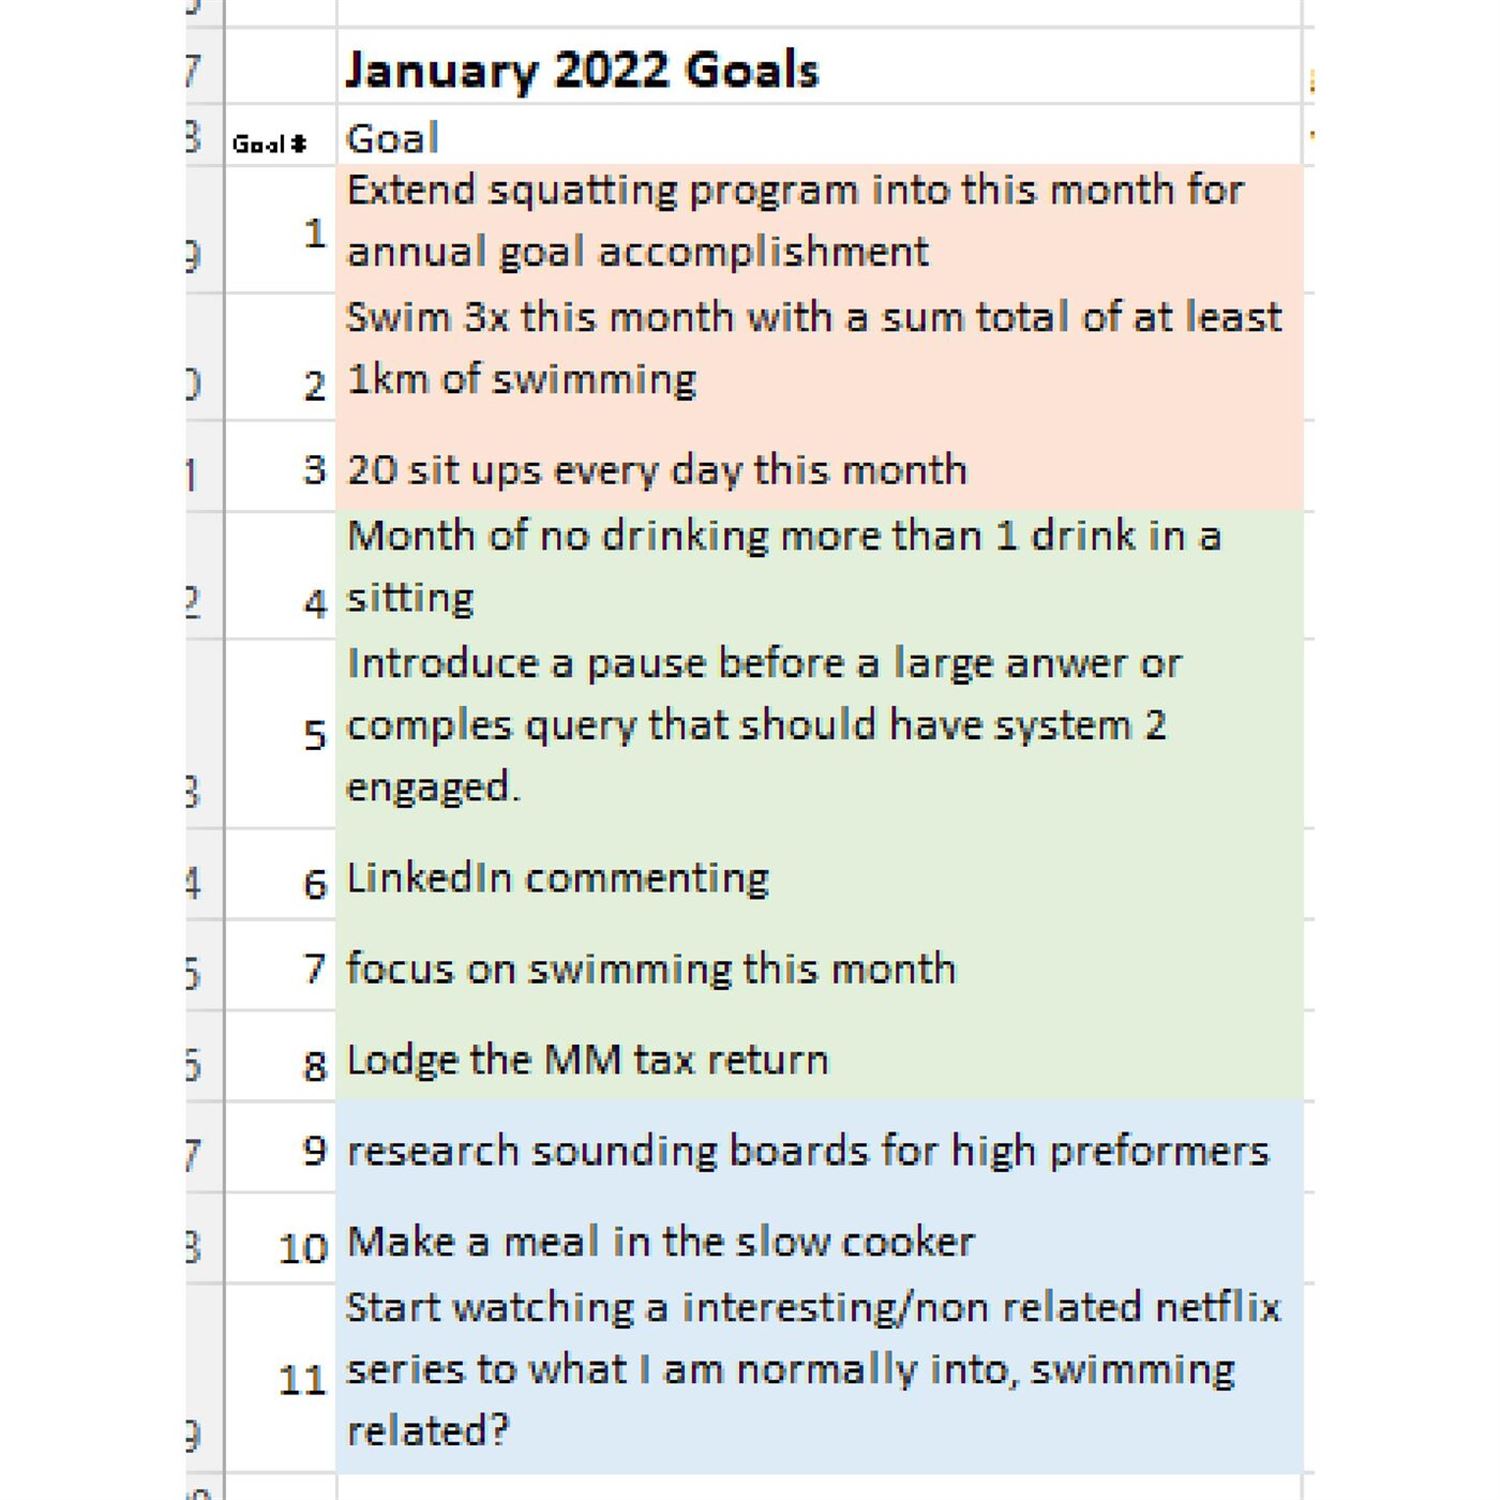 Juan's Mind January goals